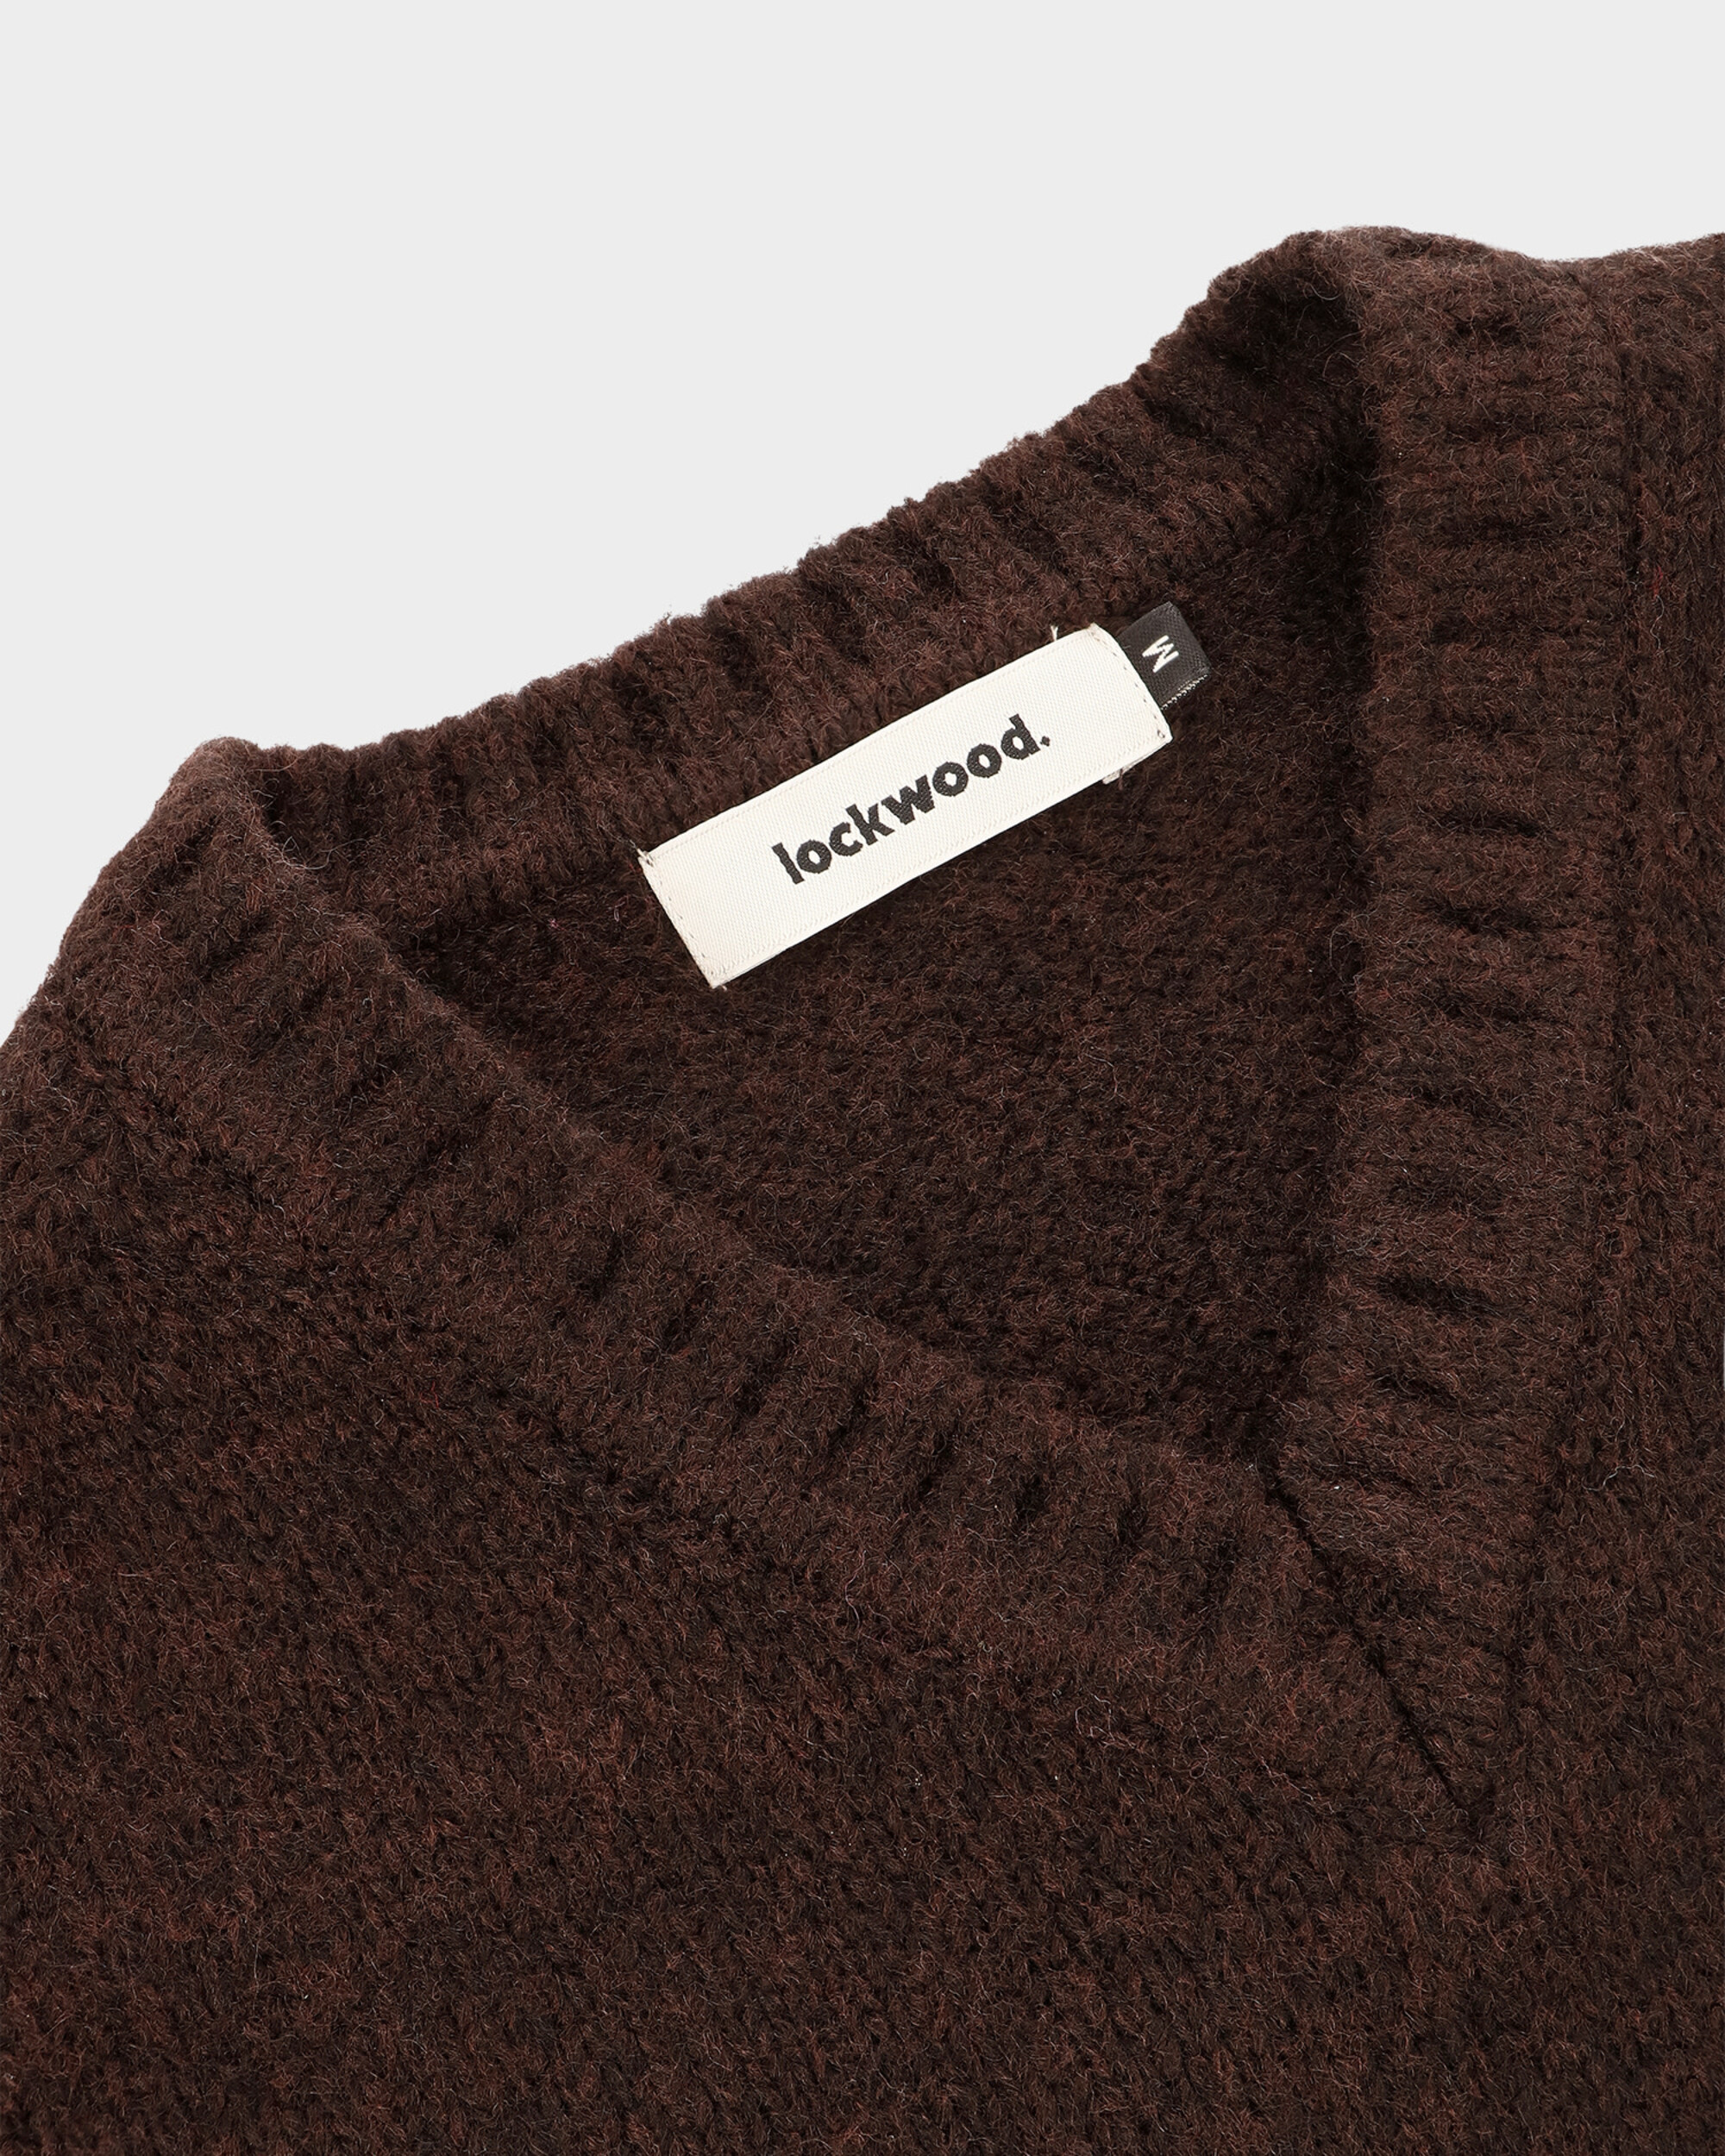 Lockwood V-Neck Knit Sweater - Brown